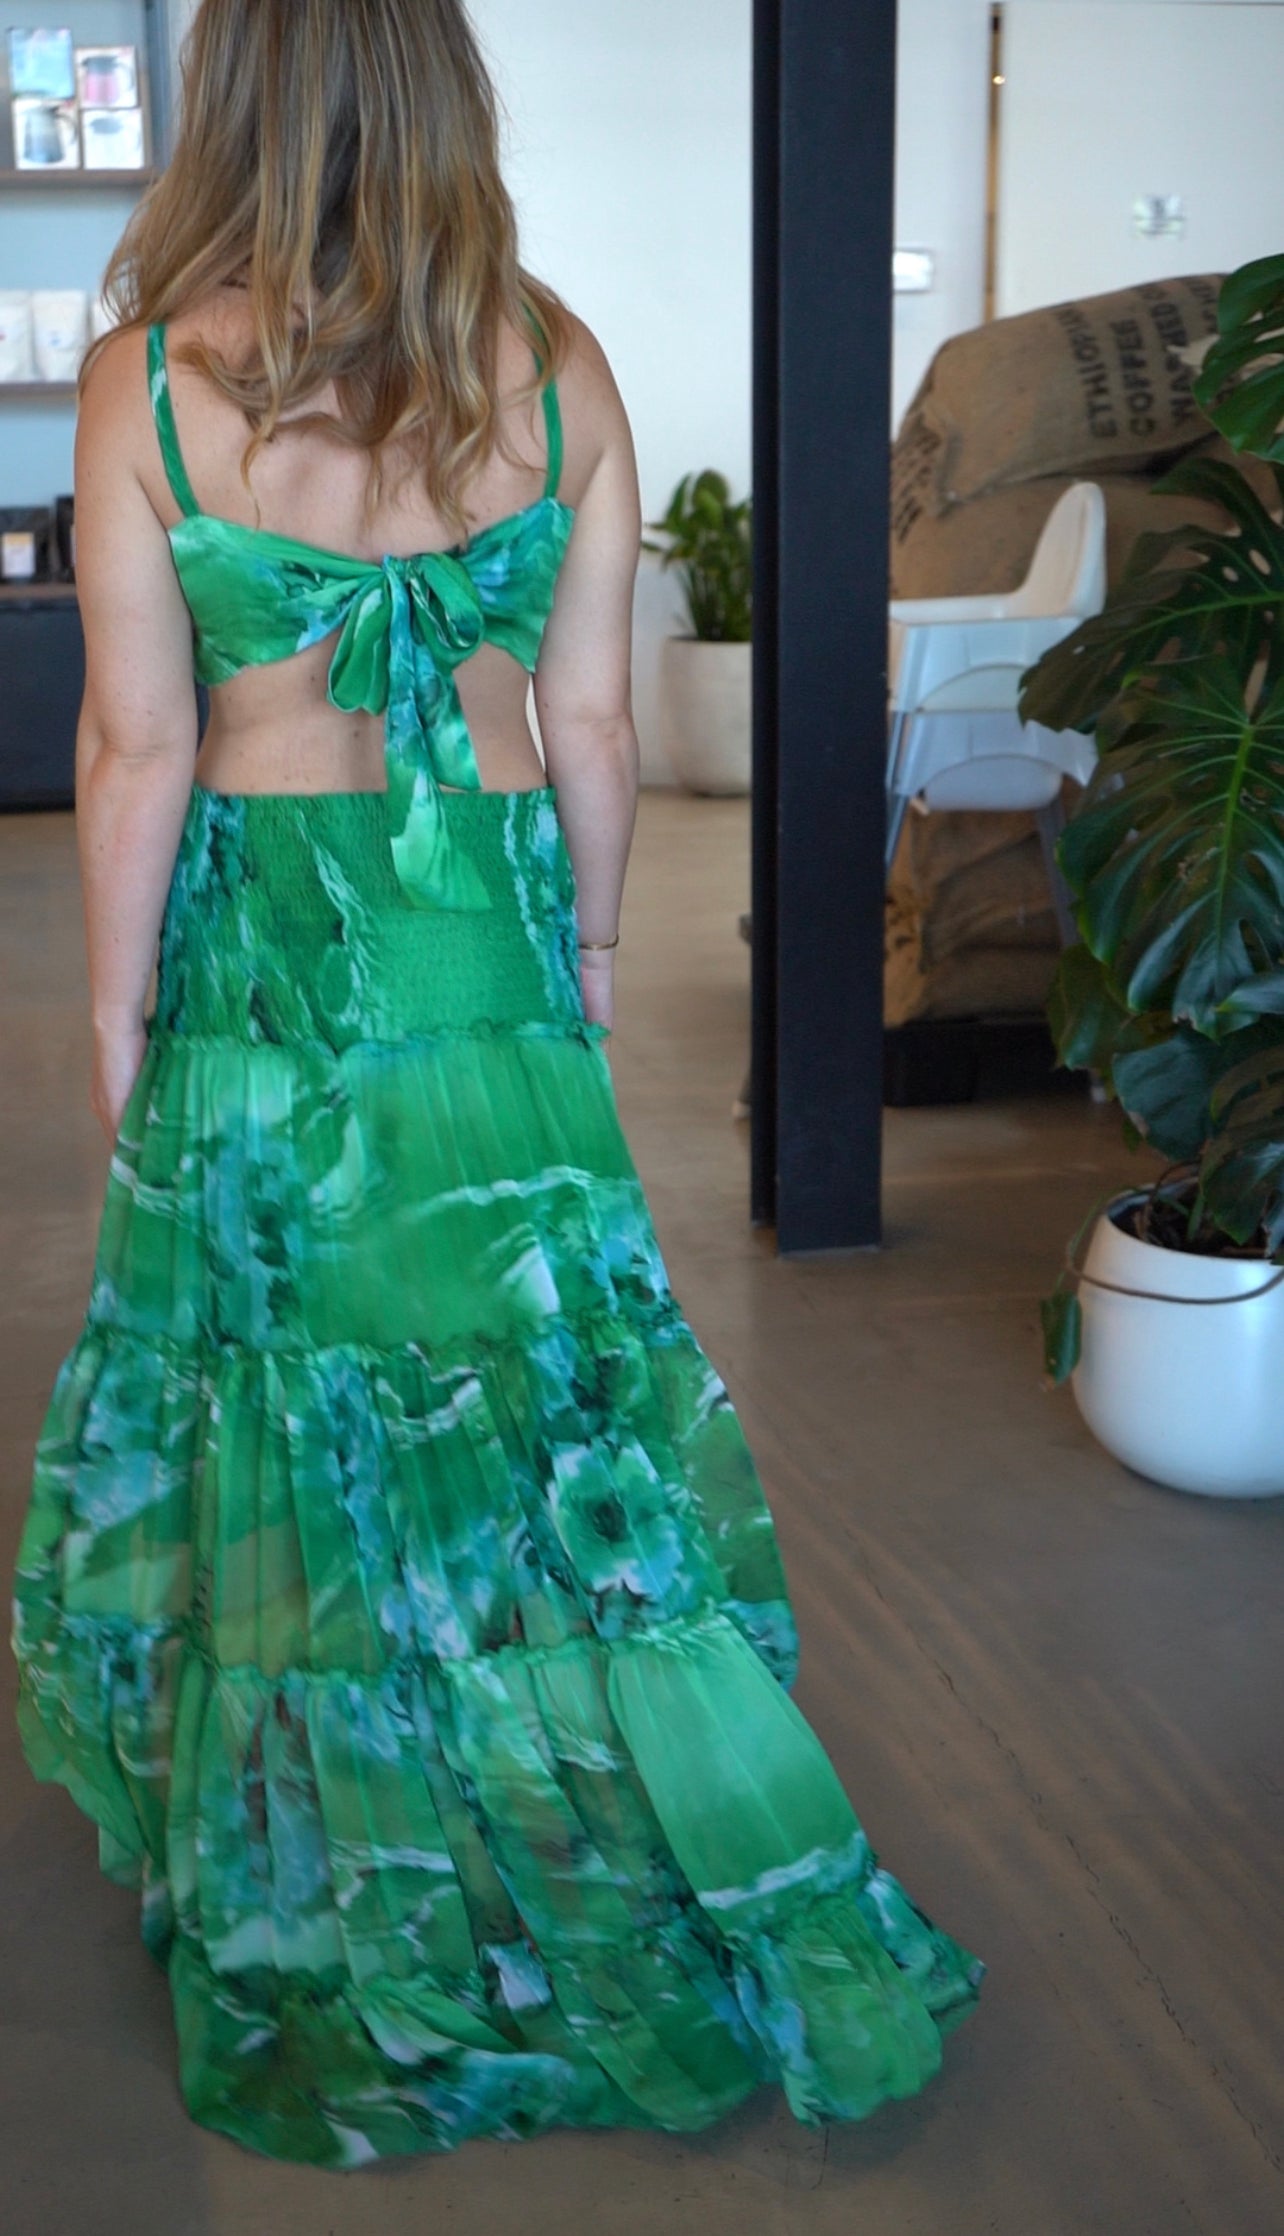 Green goddess tube dress/skirt